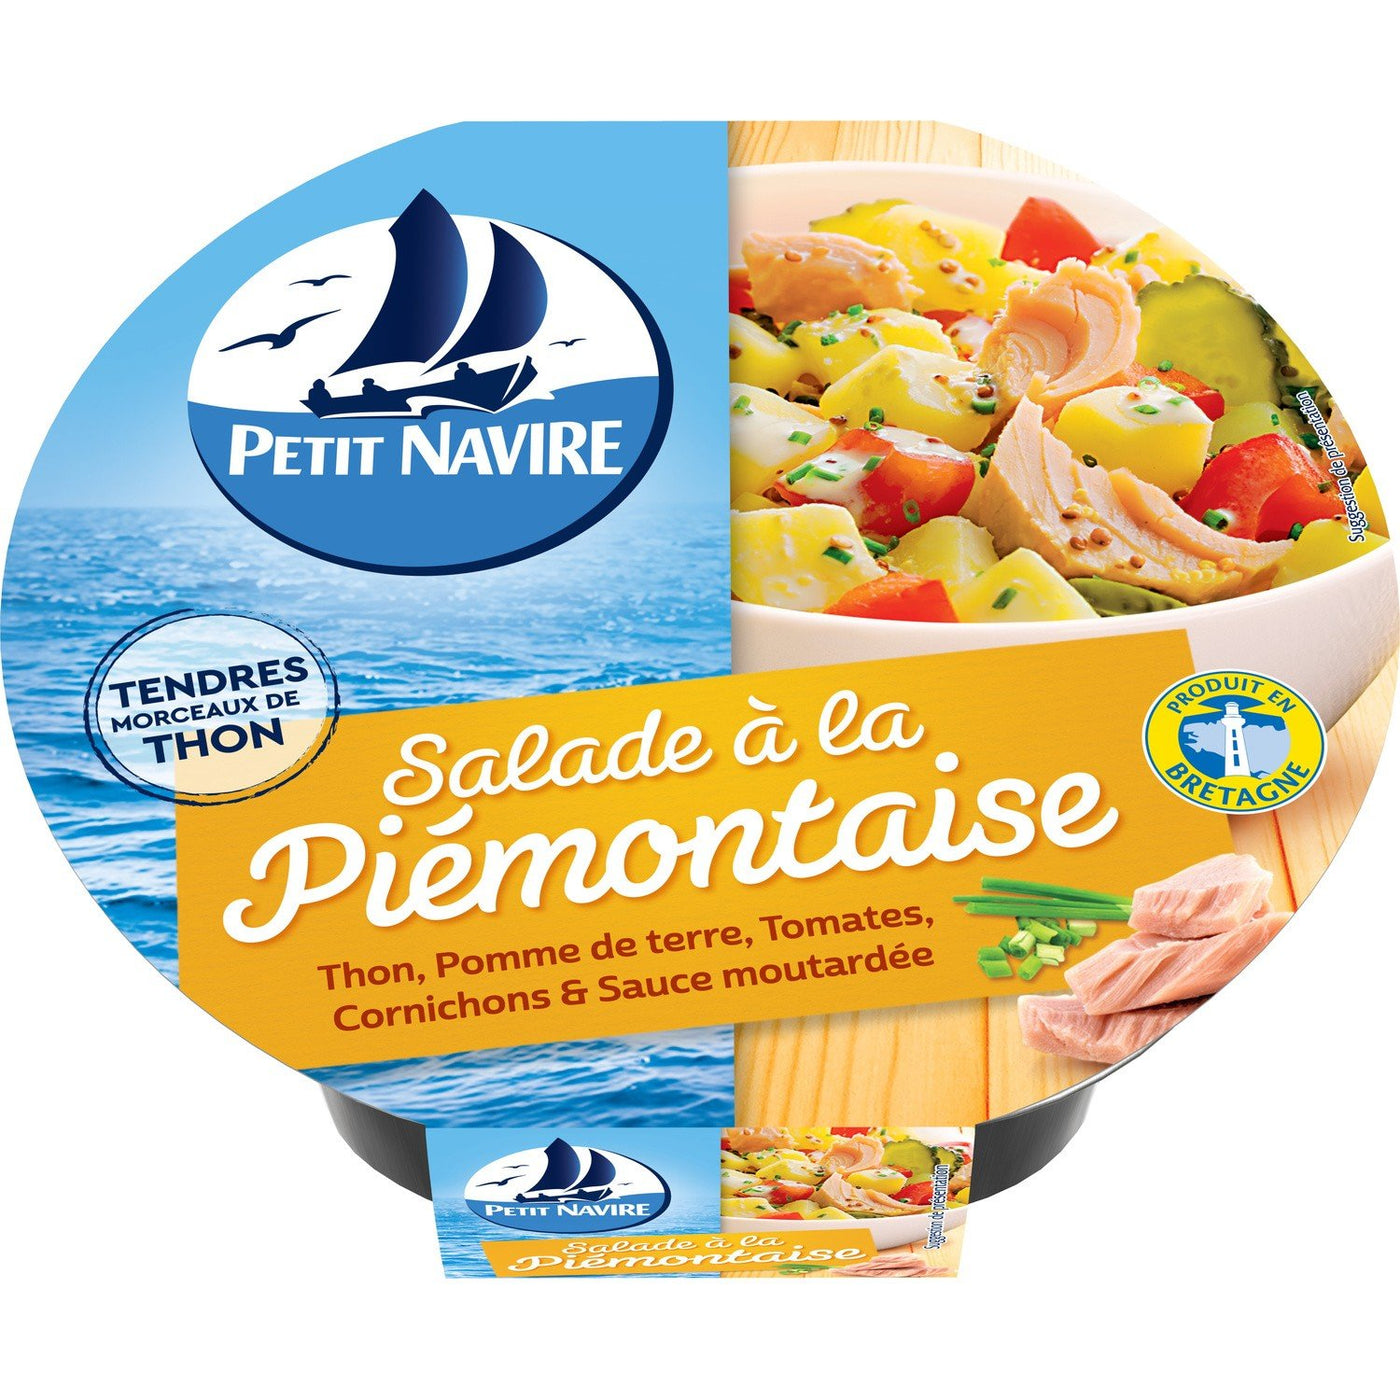 Petit Navire Salade Piemontaise 220g